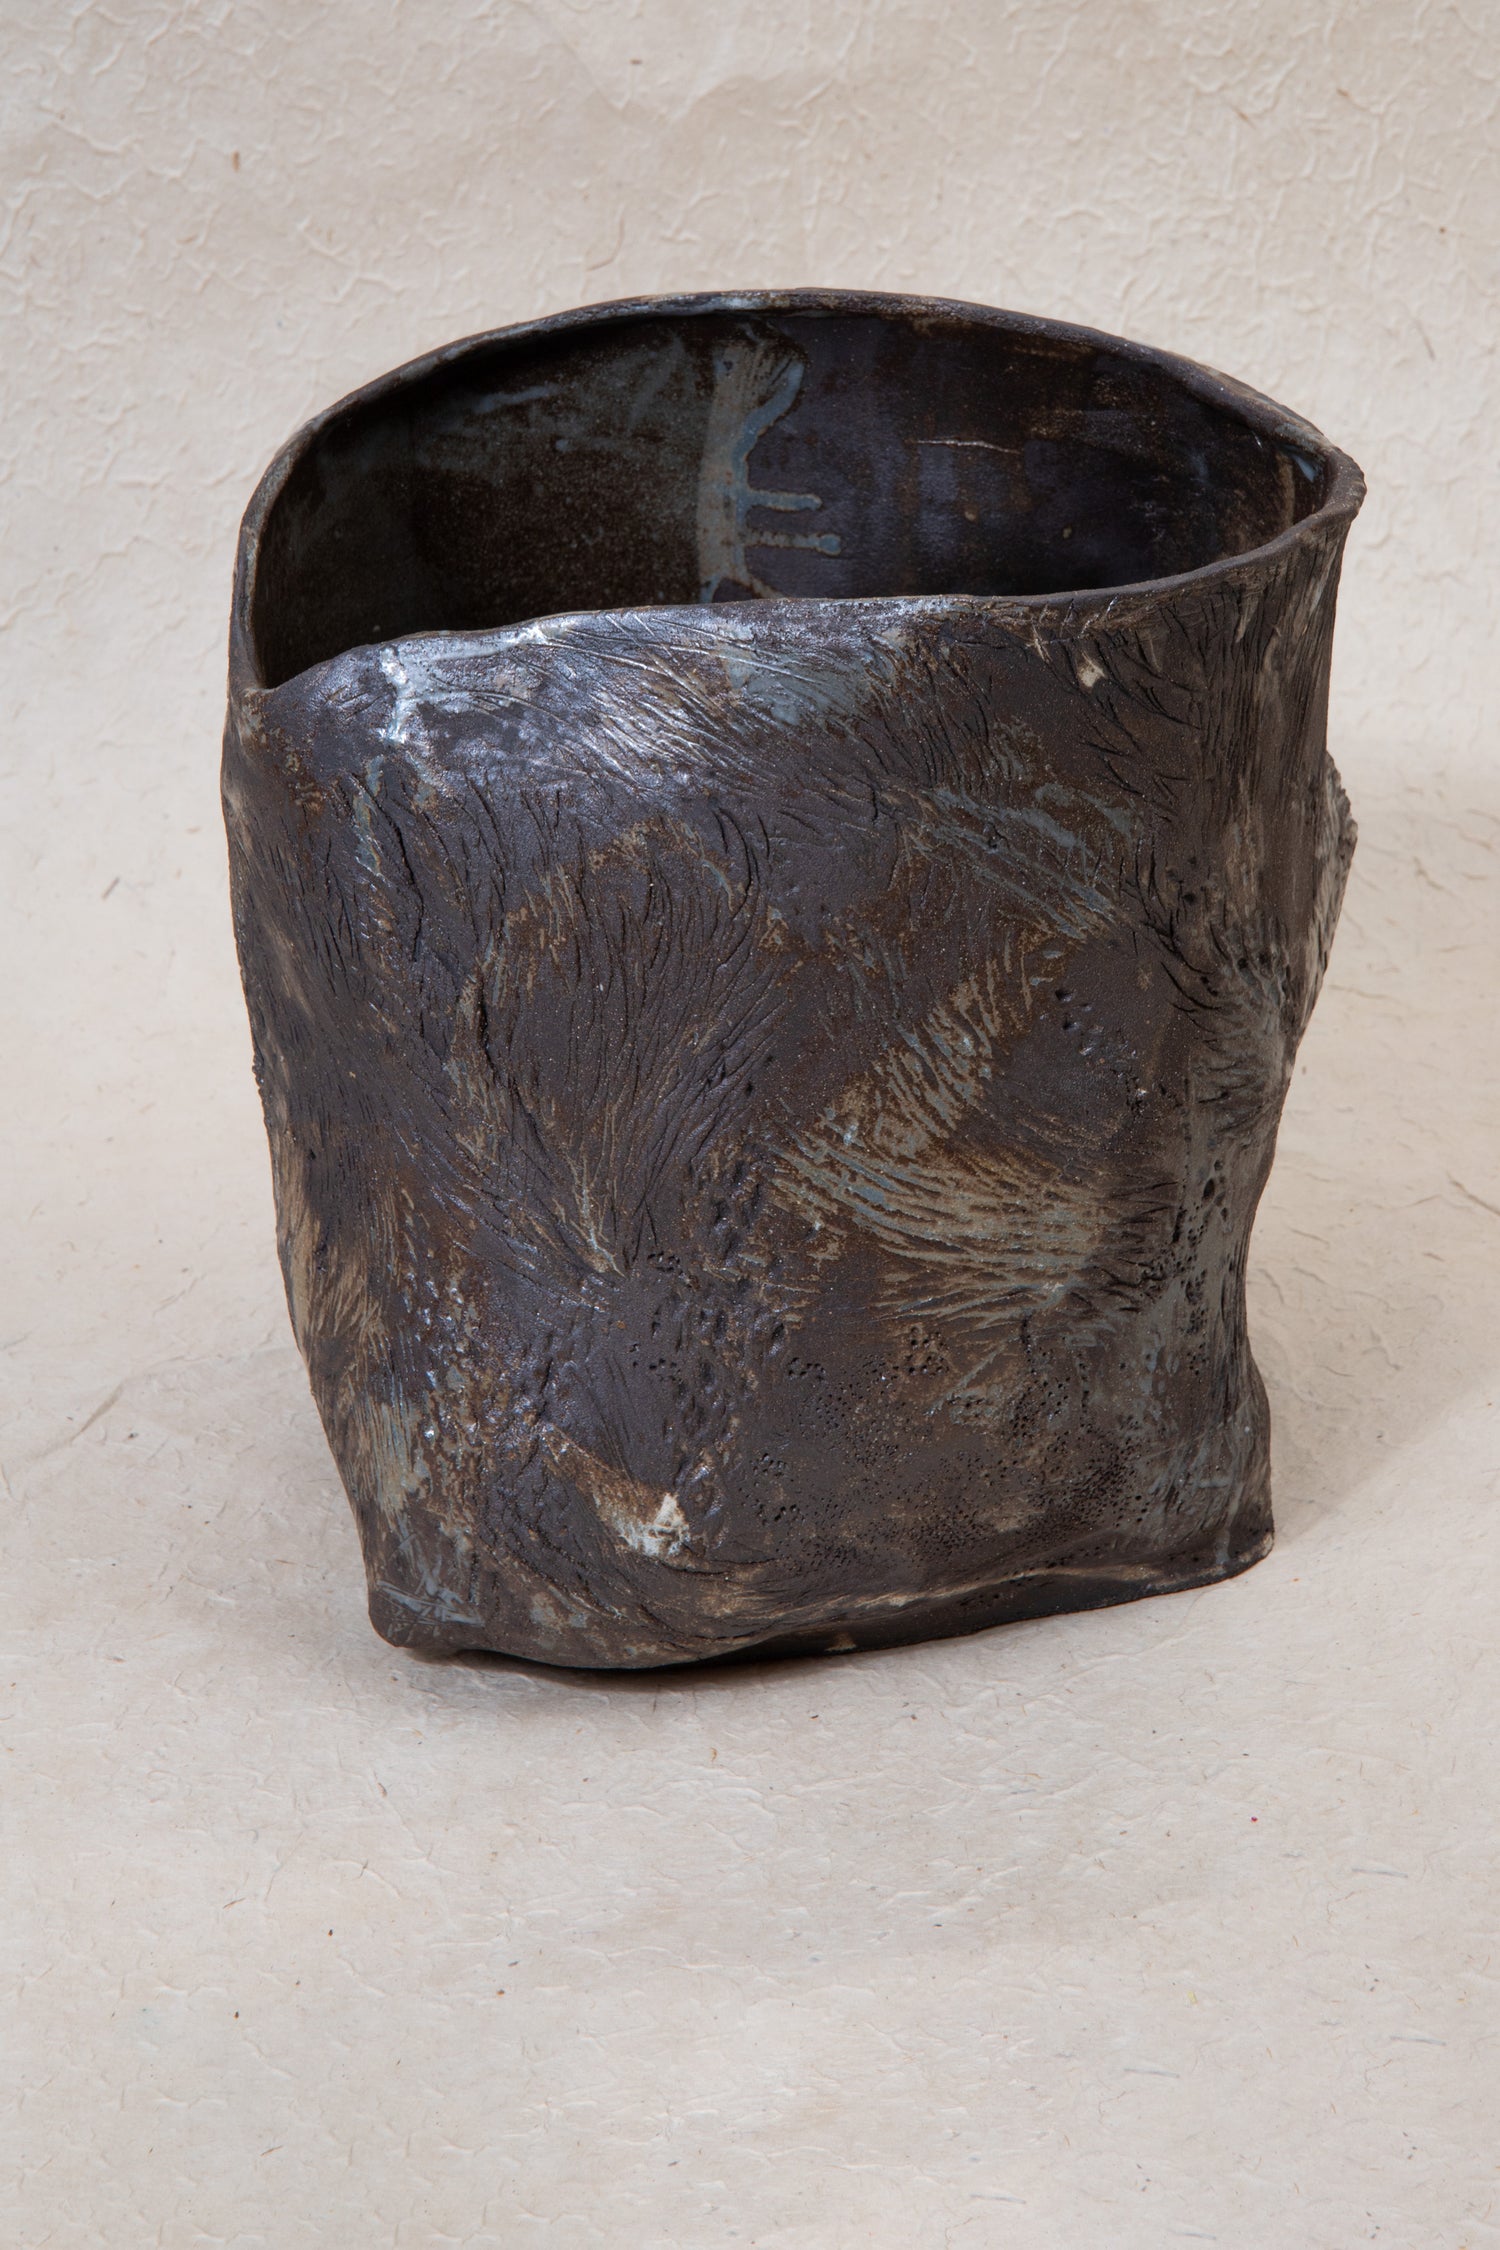 Ceramic strain vase by Ema Pradère.